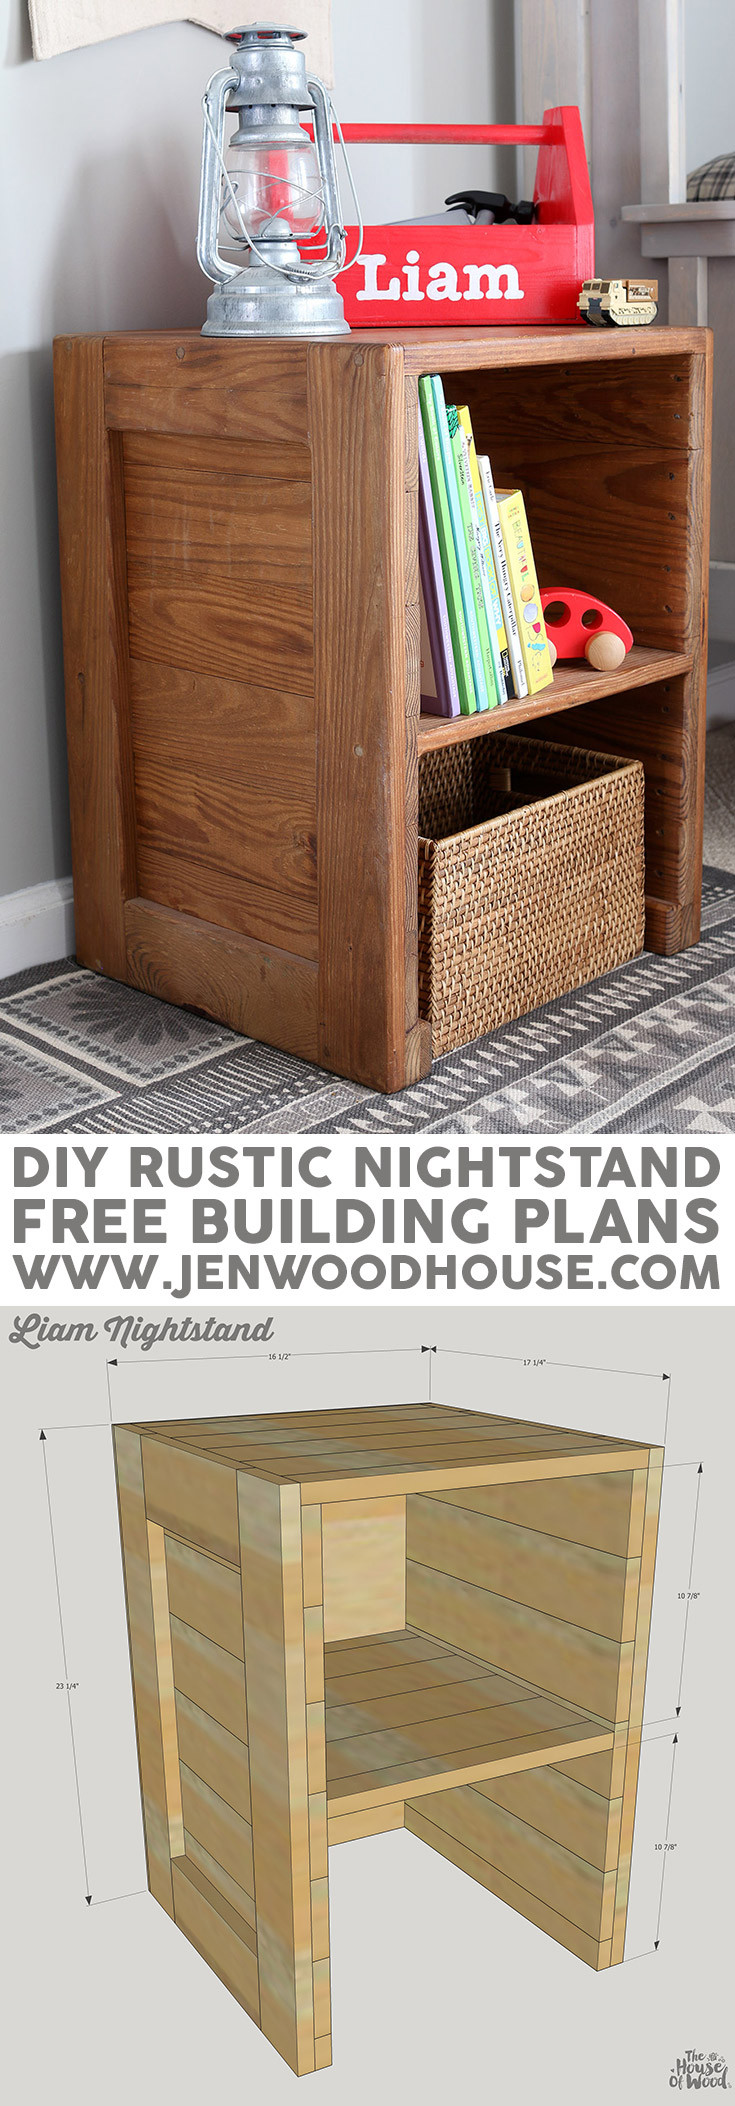 Nightstand DIY Plans
 Free Plans DIY Rustic Nightstand